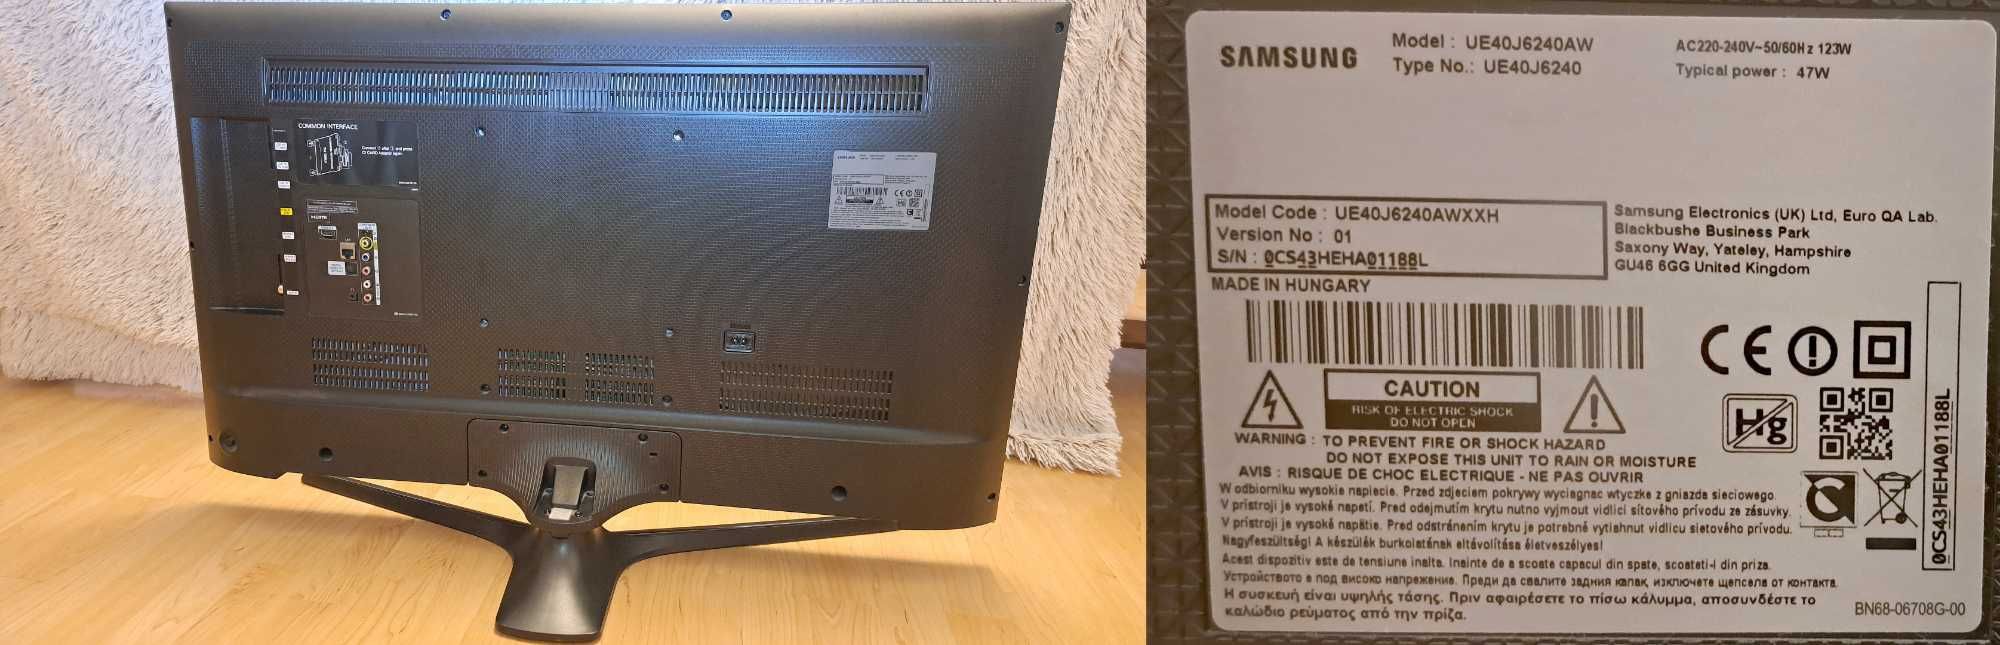 TV Samsung UE40J6240AW - uszkodzona matryca